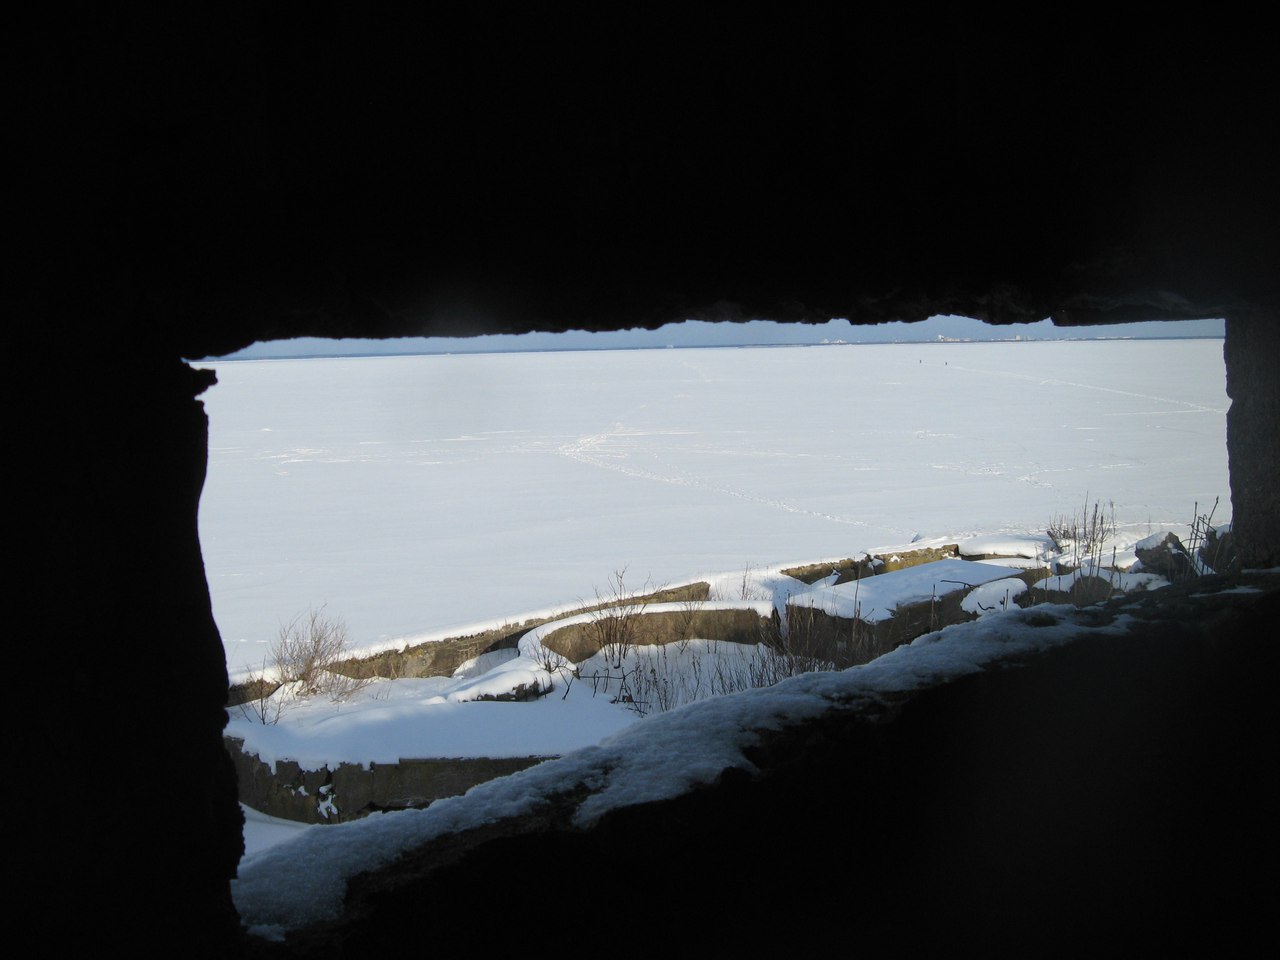 Ледовый поход на гигантский форт Обручев. Часть 2. Осмотр крепости снаружи 